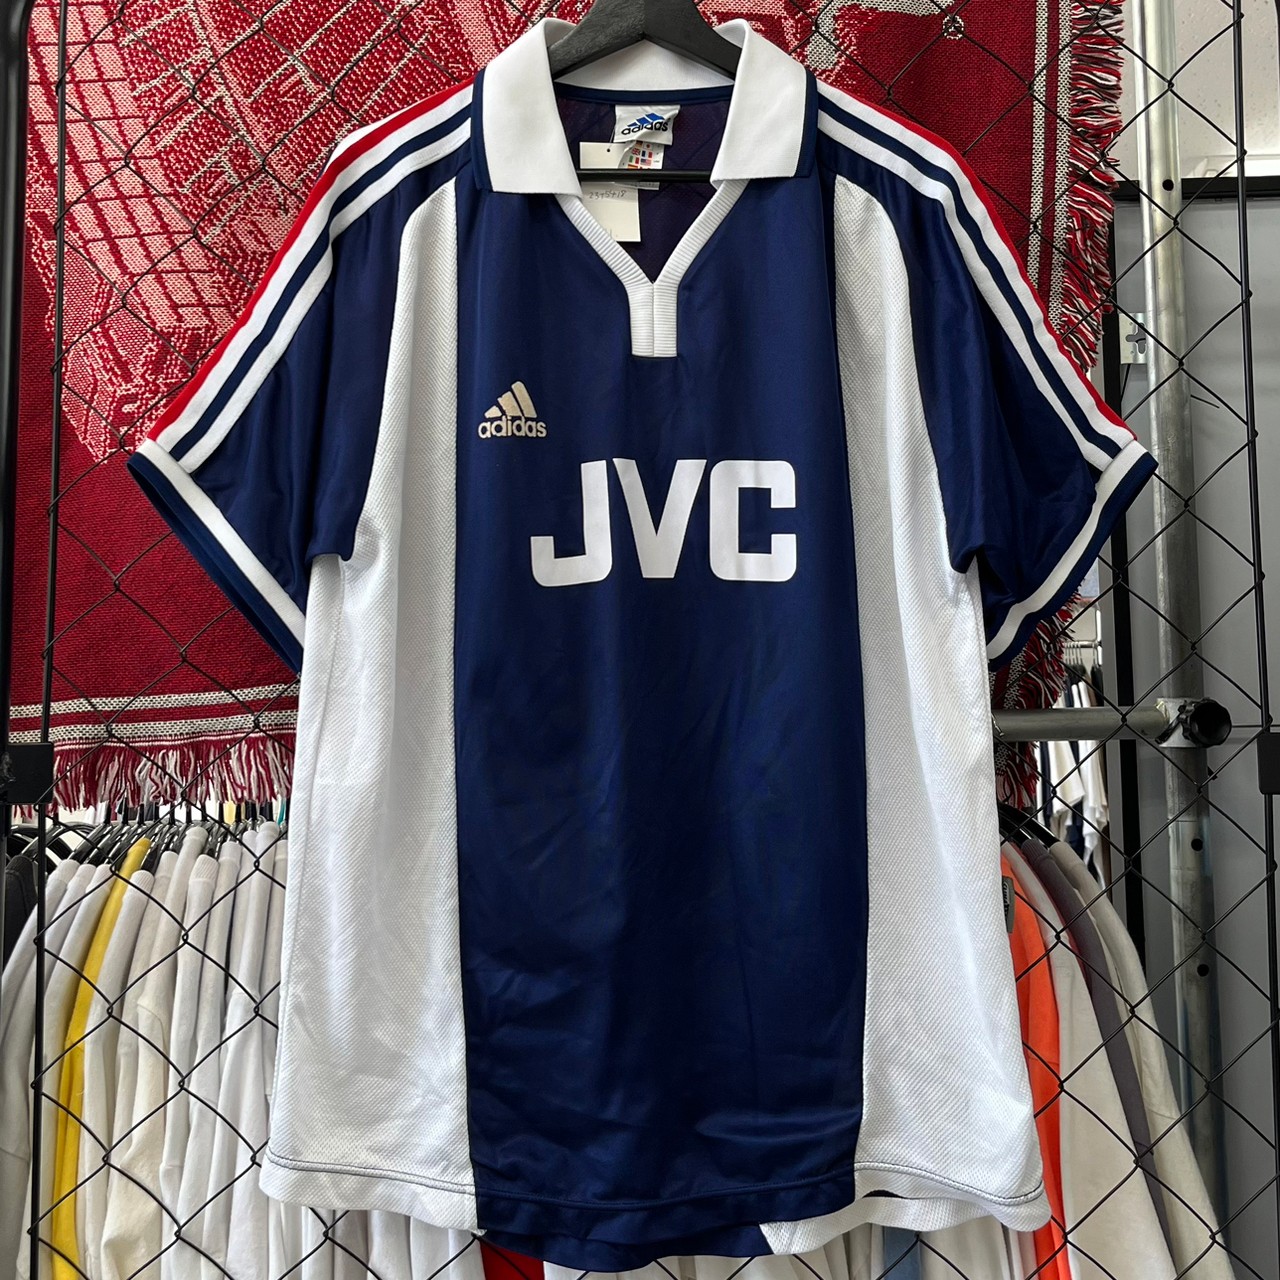 s アディダス アーセナル JVC ゲームシャツ サッカー ワンポイント